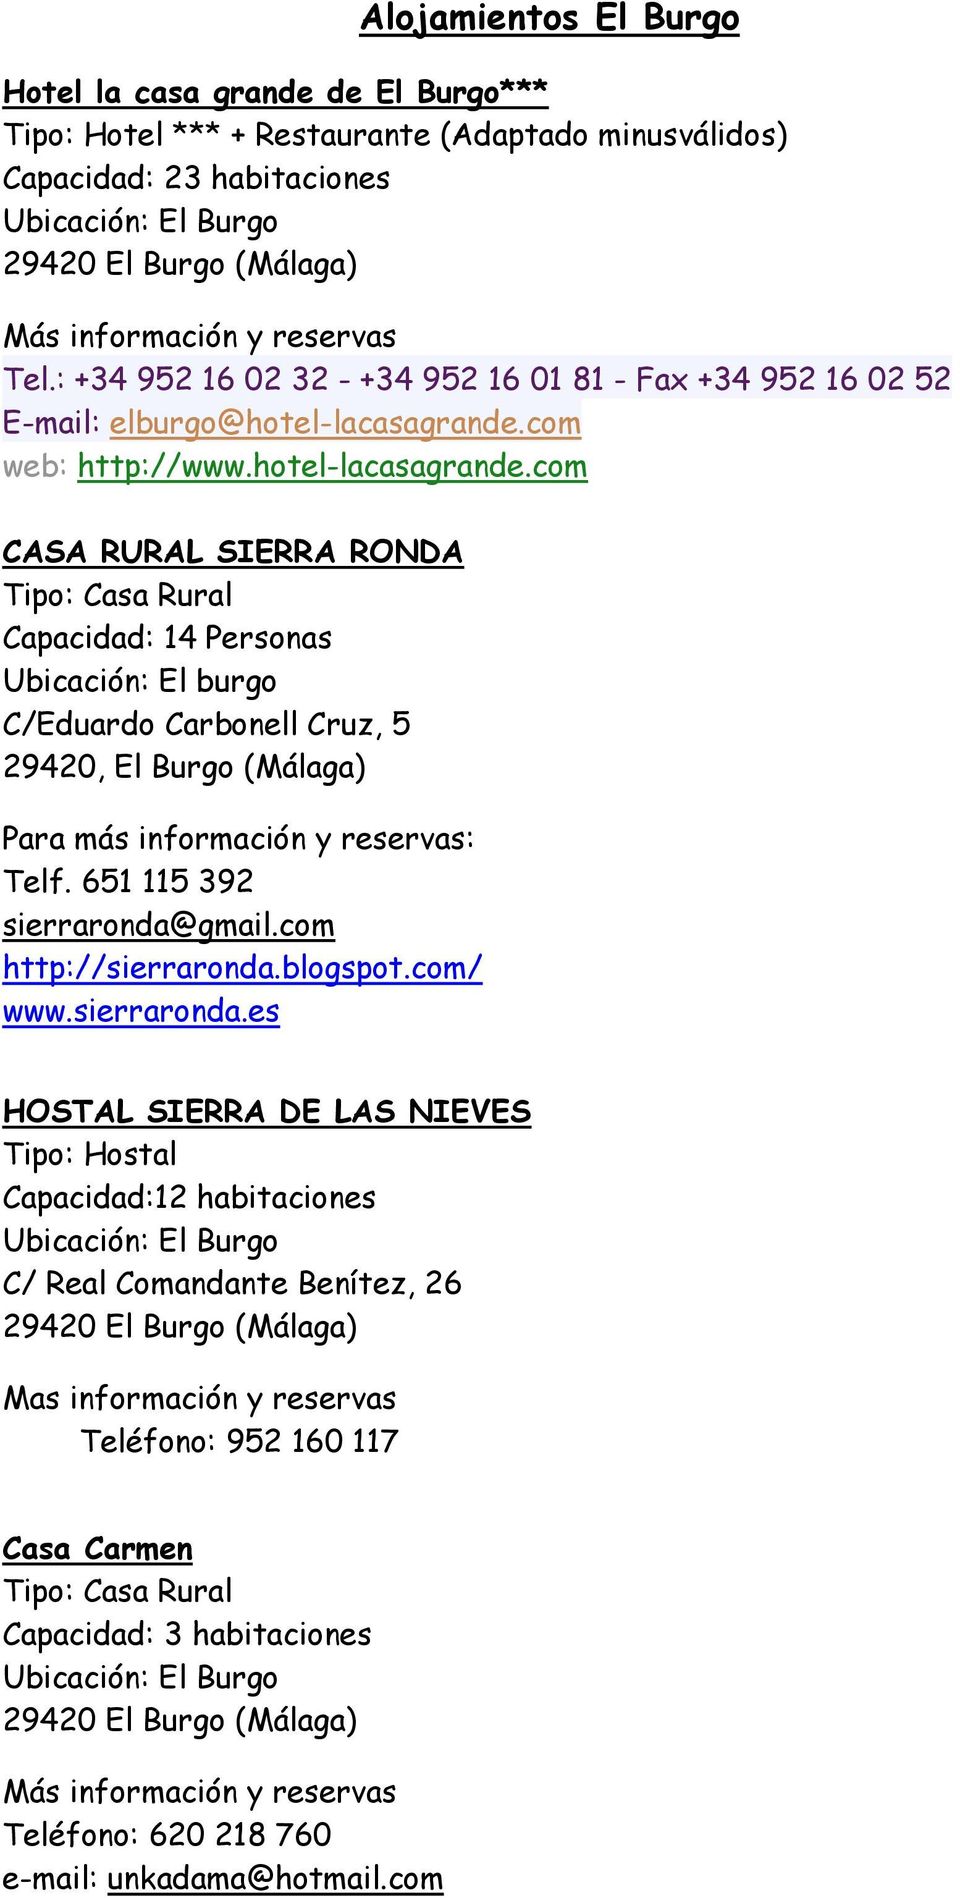 com web: http://www.hotel-lacasagrande.com CASA RURAL SIERRA RONDA Capacidad: 14 Personas Ubicación: El burgo C/Eduardo Carbonell Cruz, 5 29420, El Burgo (Málaga) Telf.